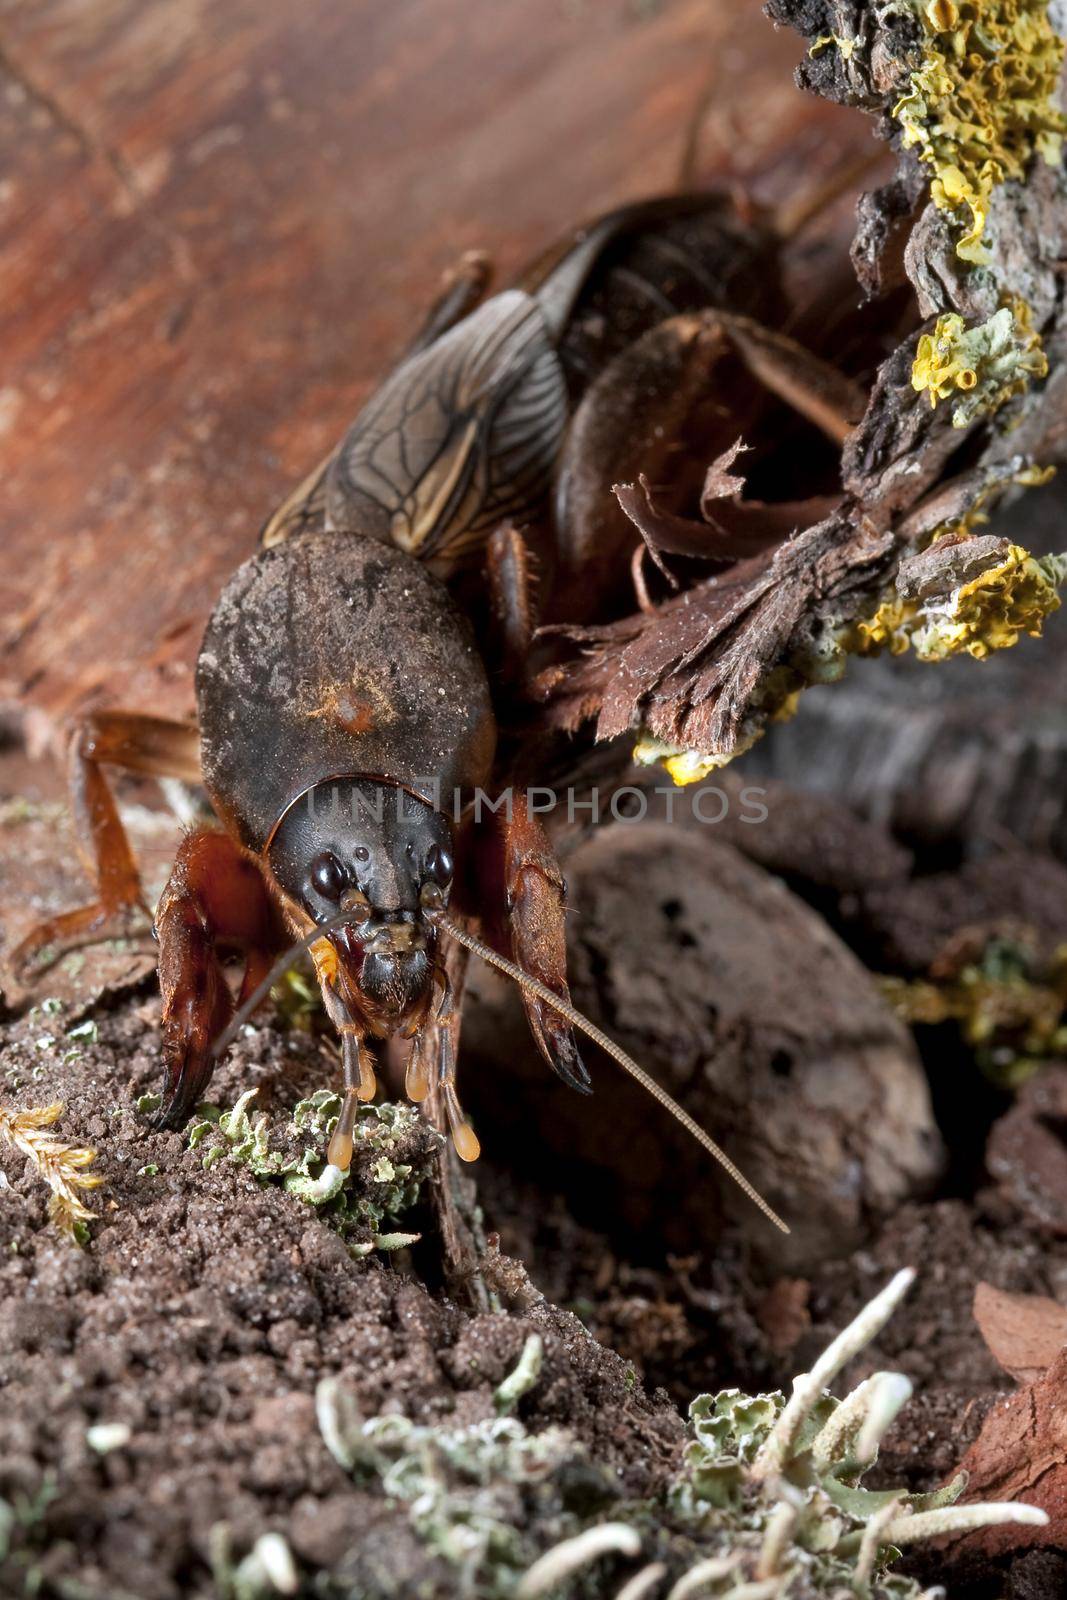 Mole Cricket on mossy peel by Lincikas